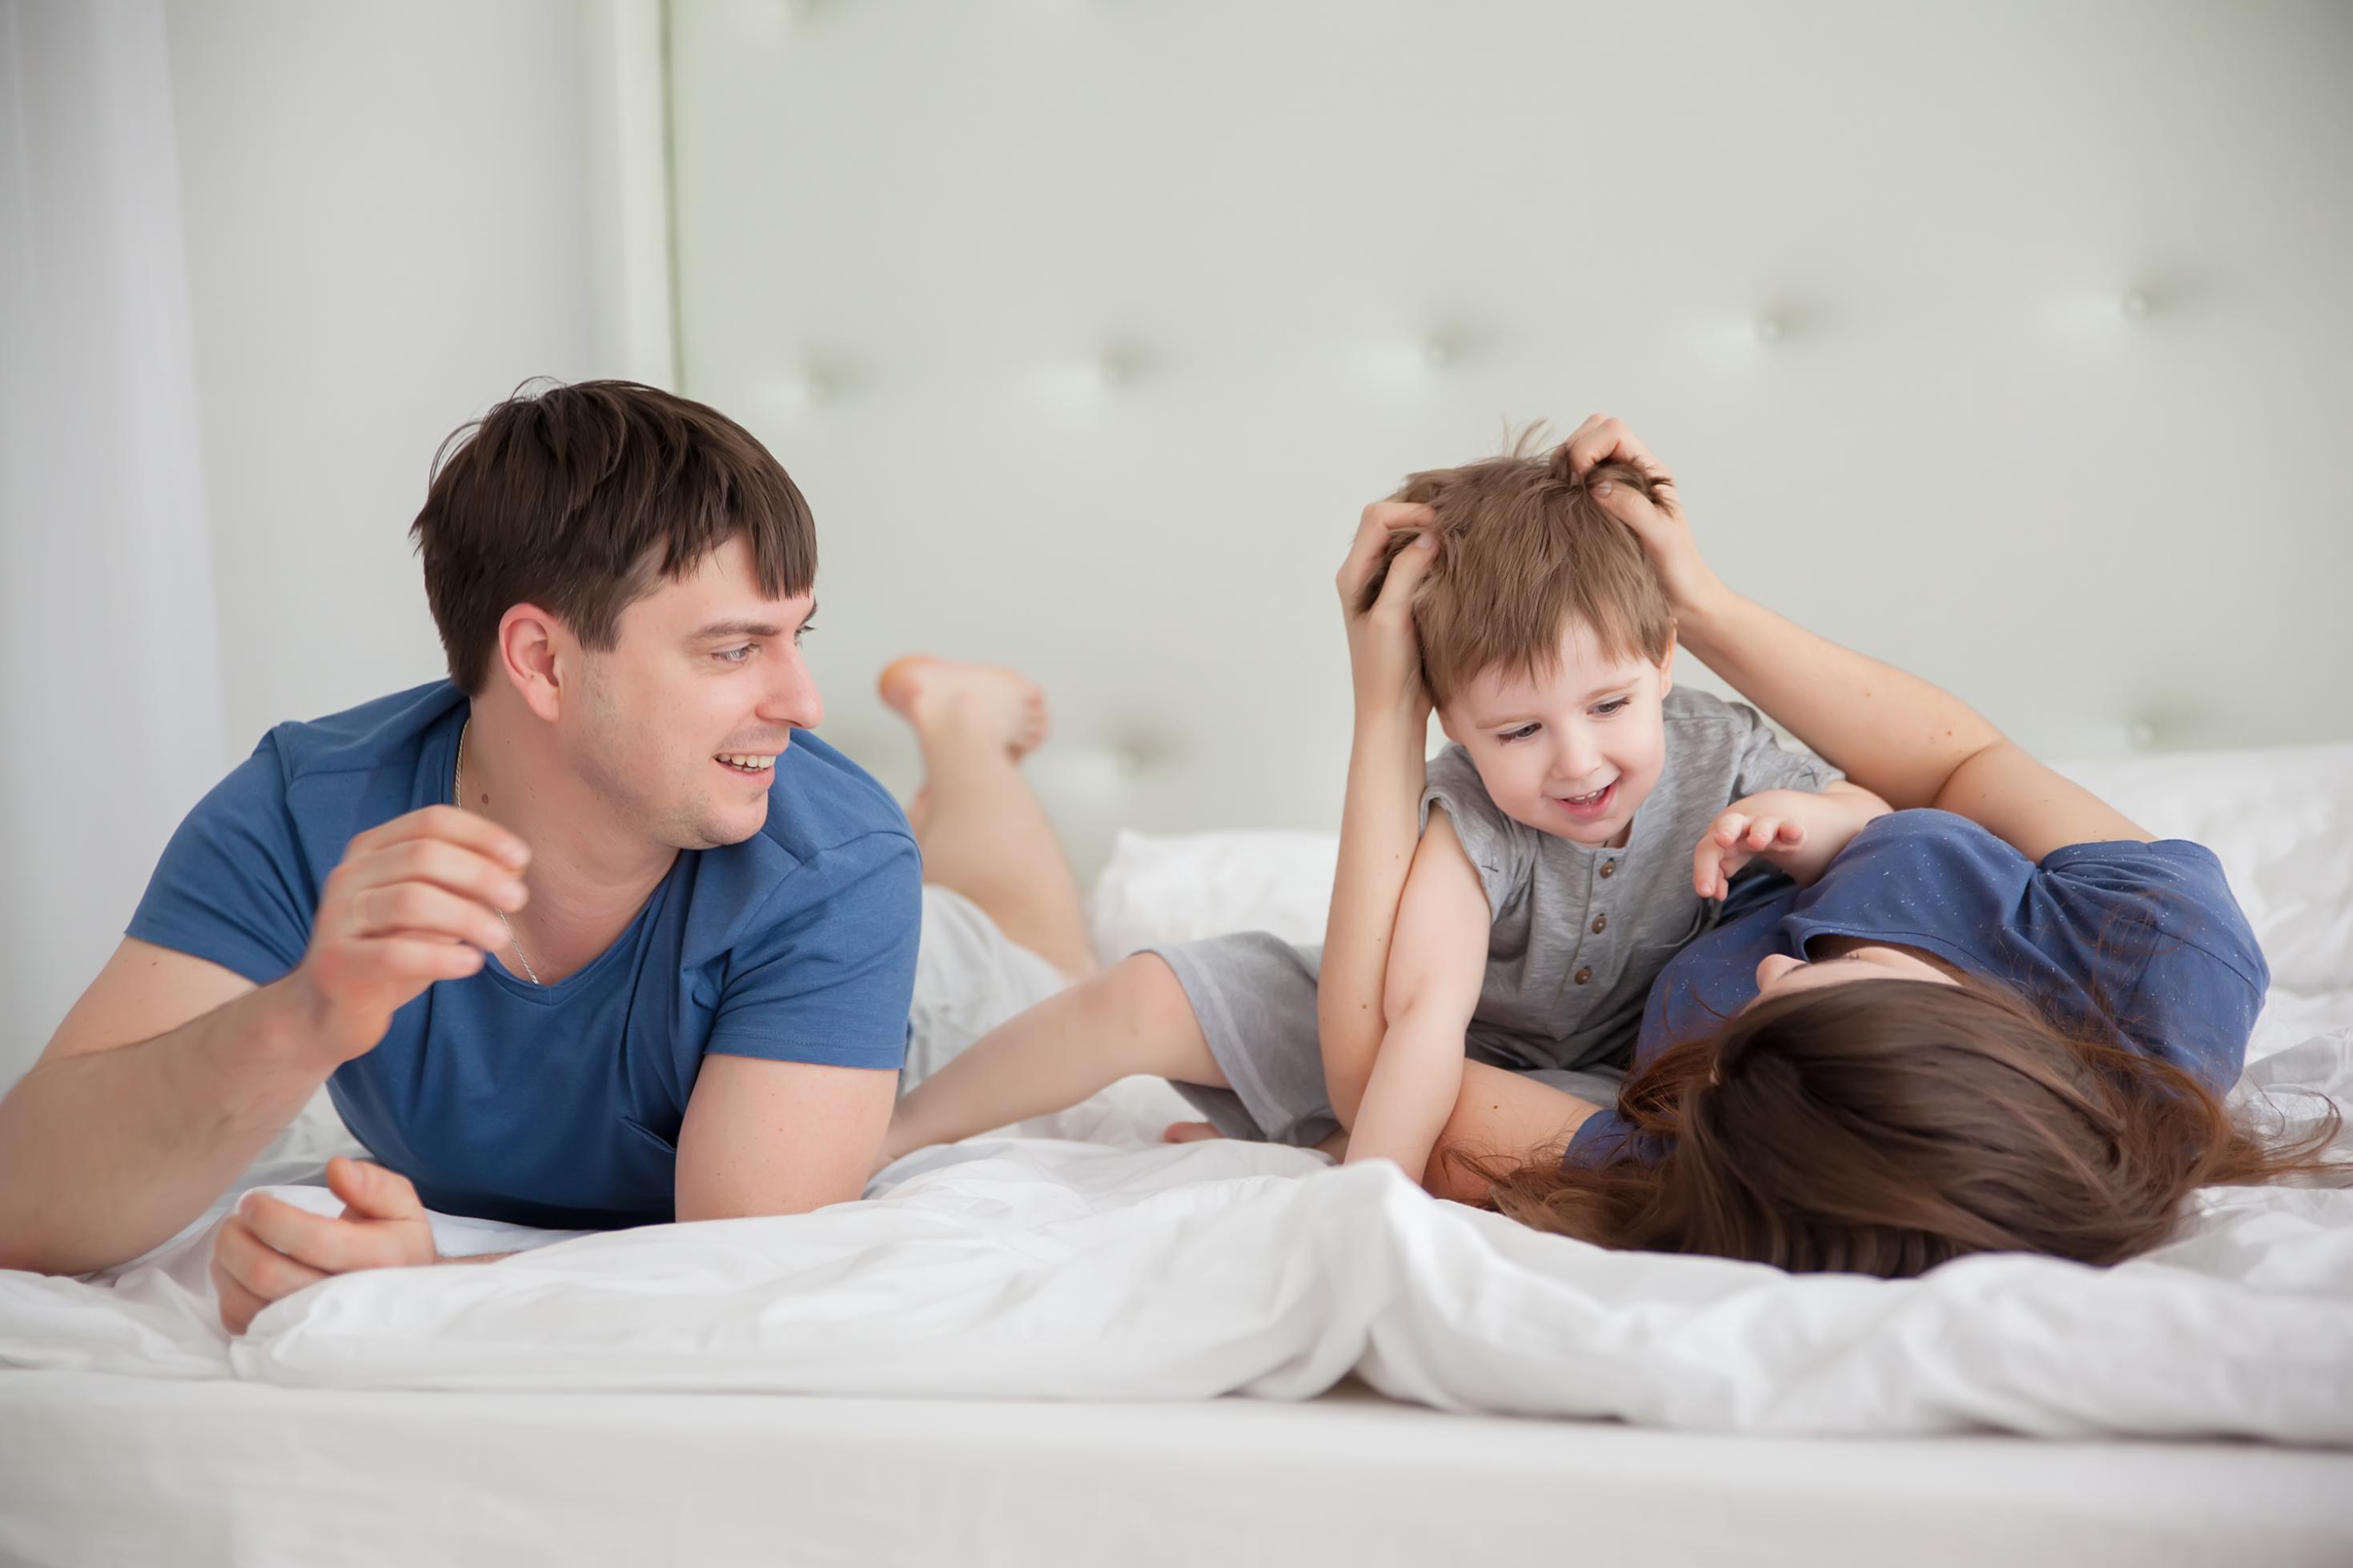 Eine junge Familie – Vater, Mutter, Kind – tobt morgens im Bett. Alle sehen zufrieden und ausgeschlafen aus. Sie haben noch ihre Schlafanzüge an.